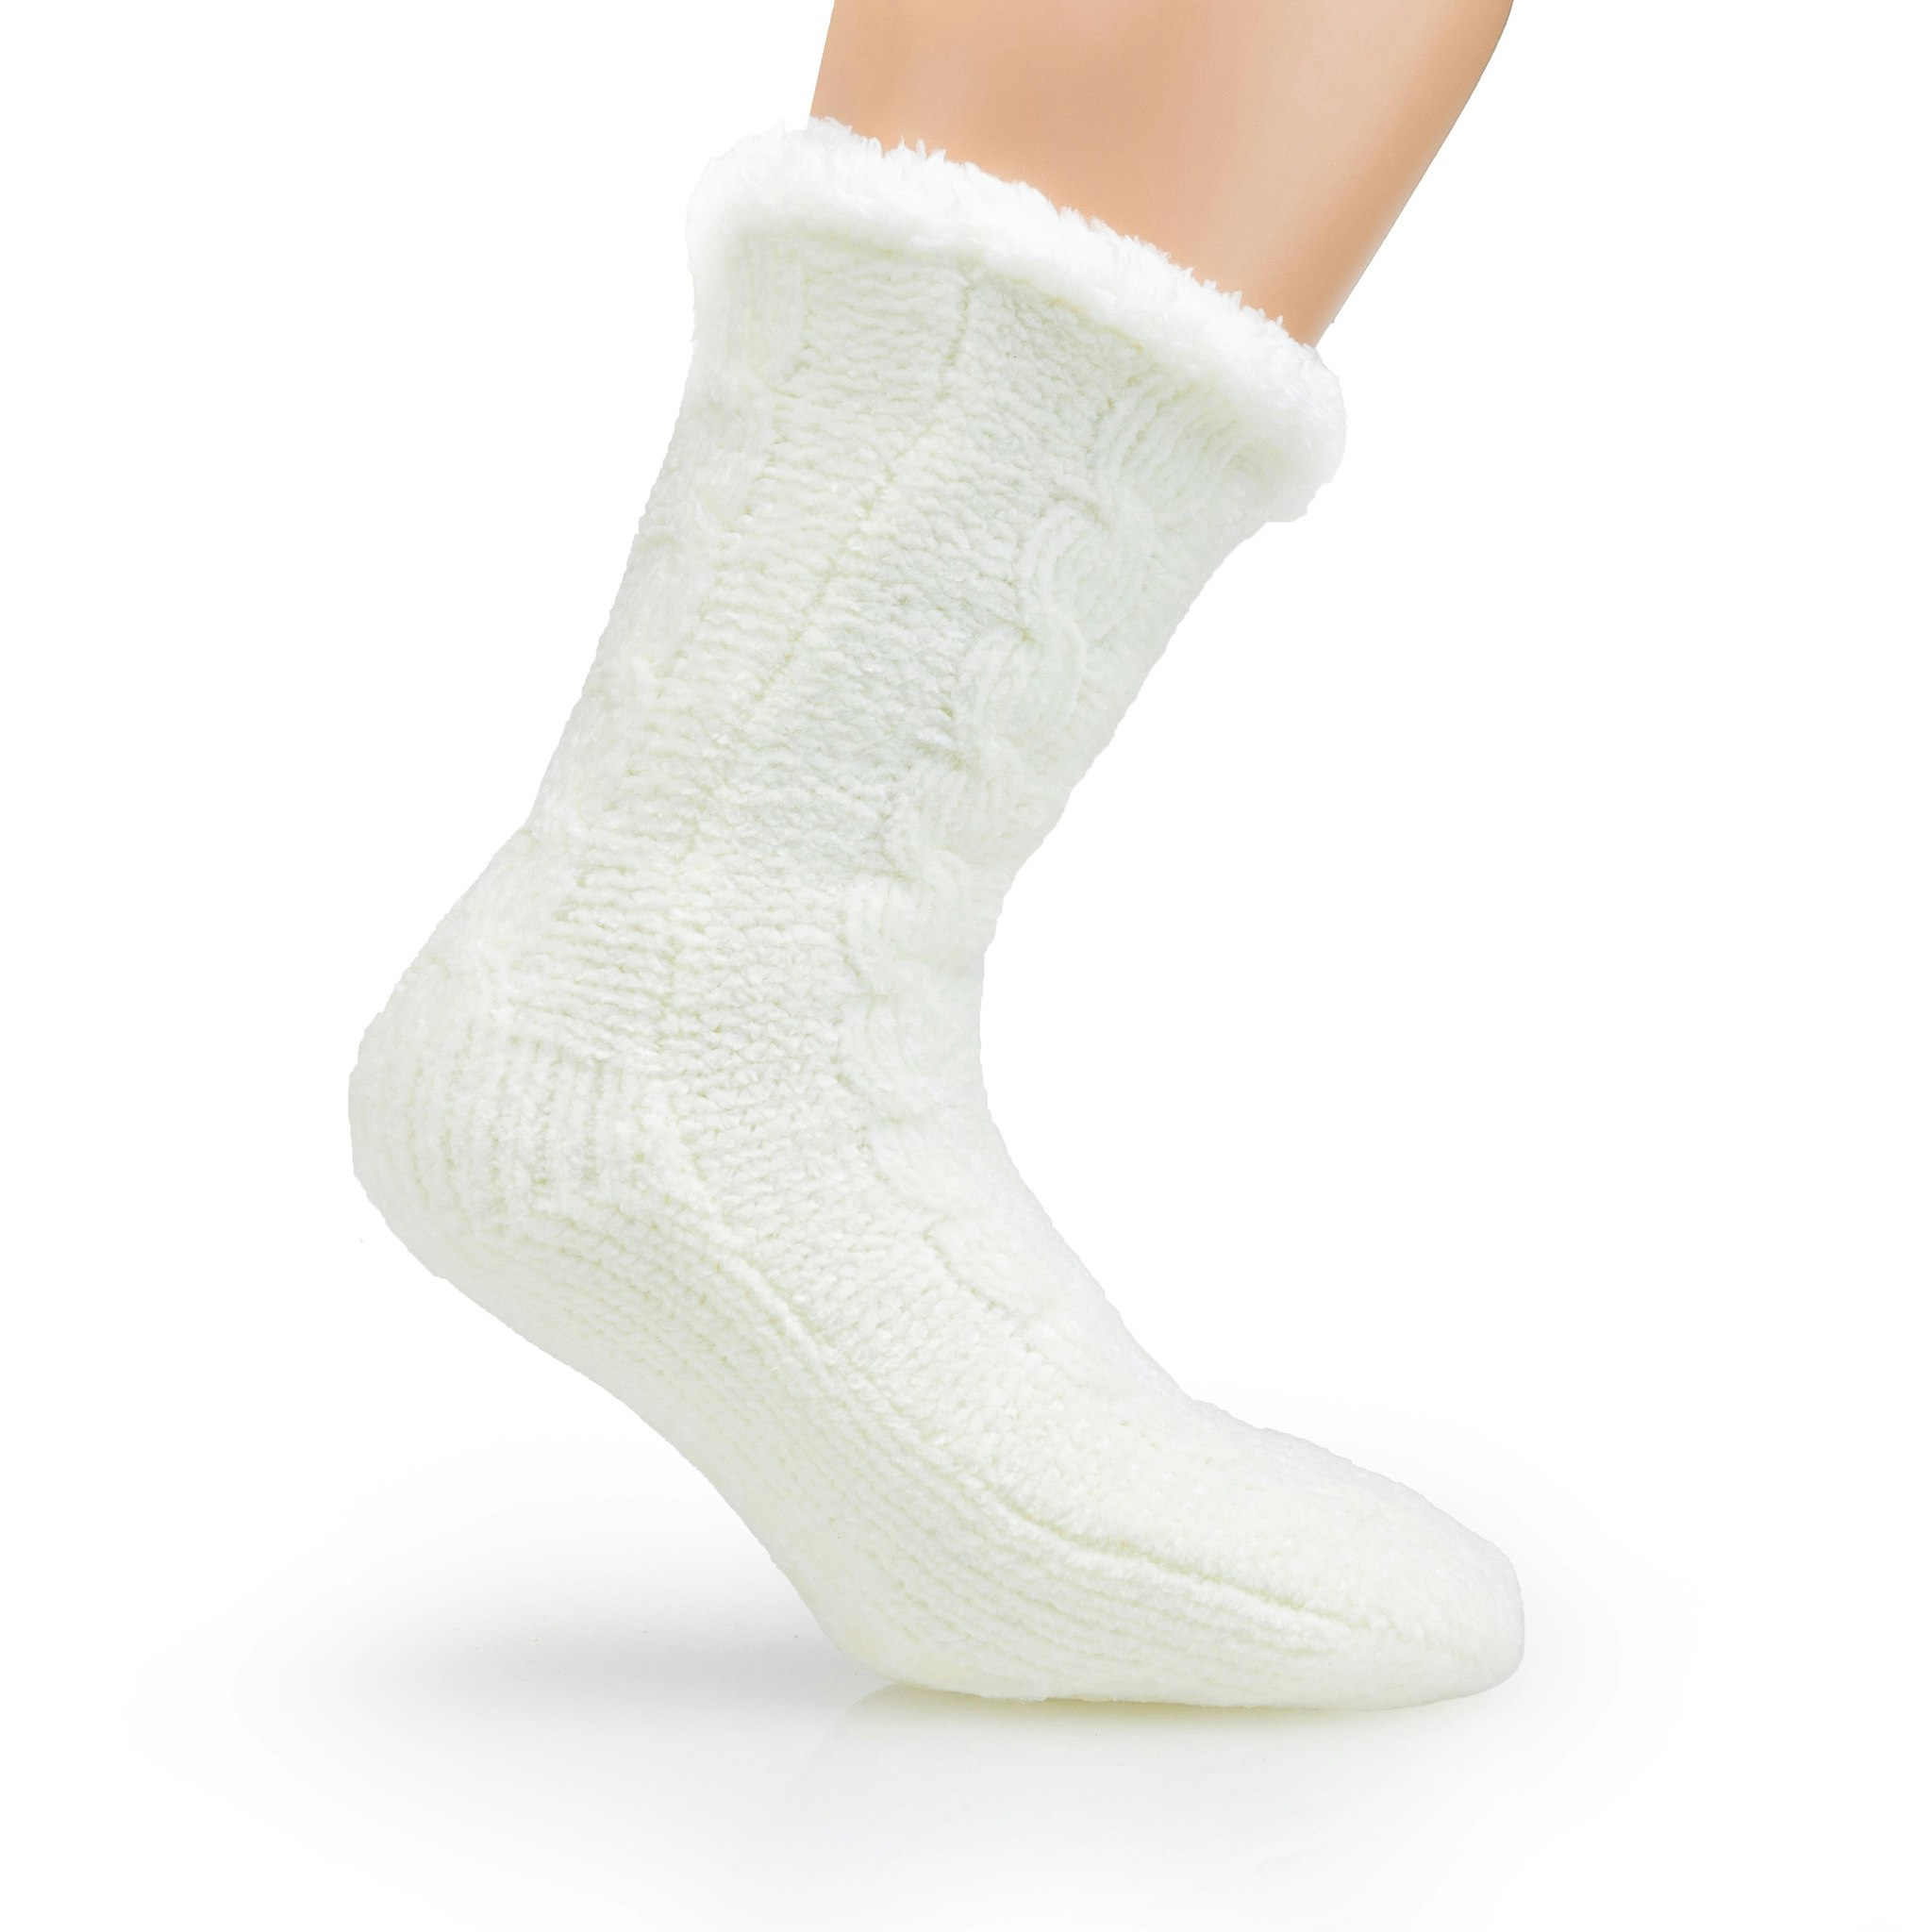 Vuoratut lämpimät sukat (Valkoinen) - Hinta 29,95 euroa - Jalkakauppa